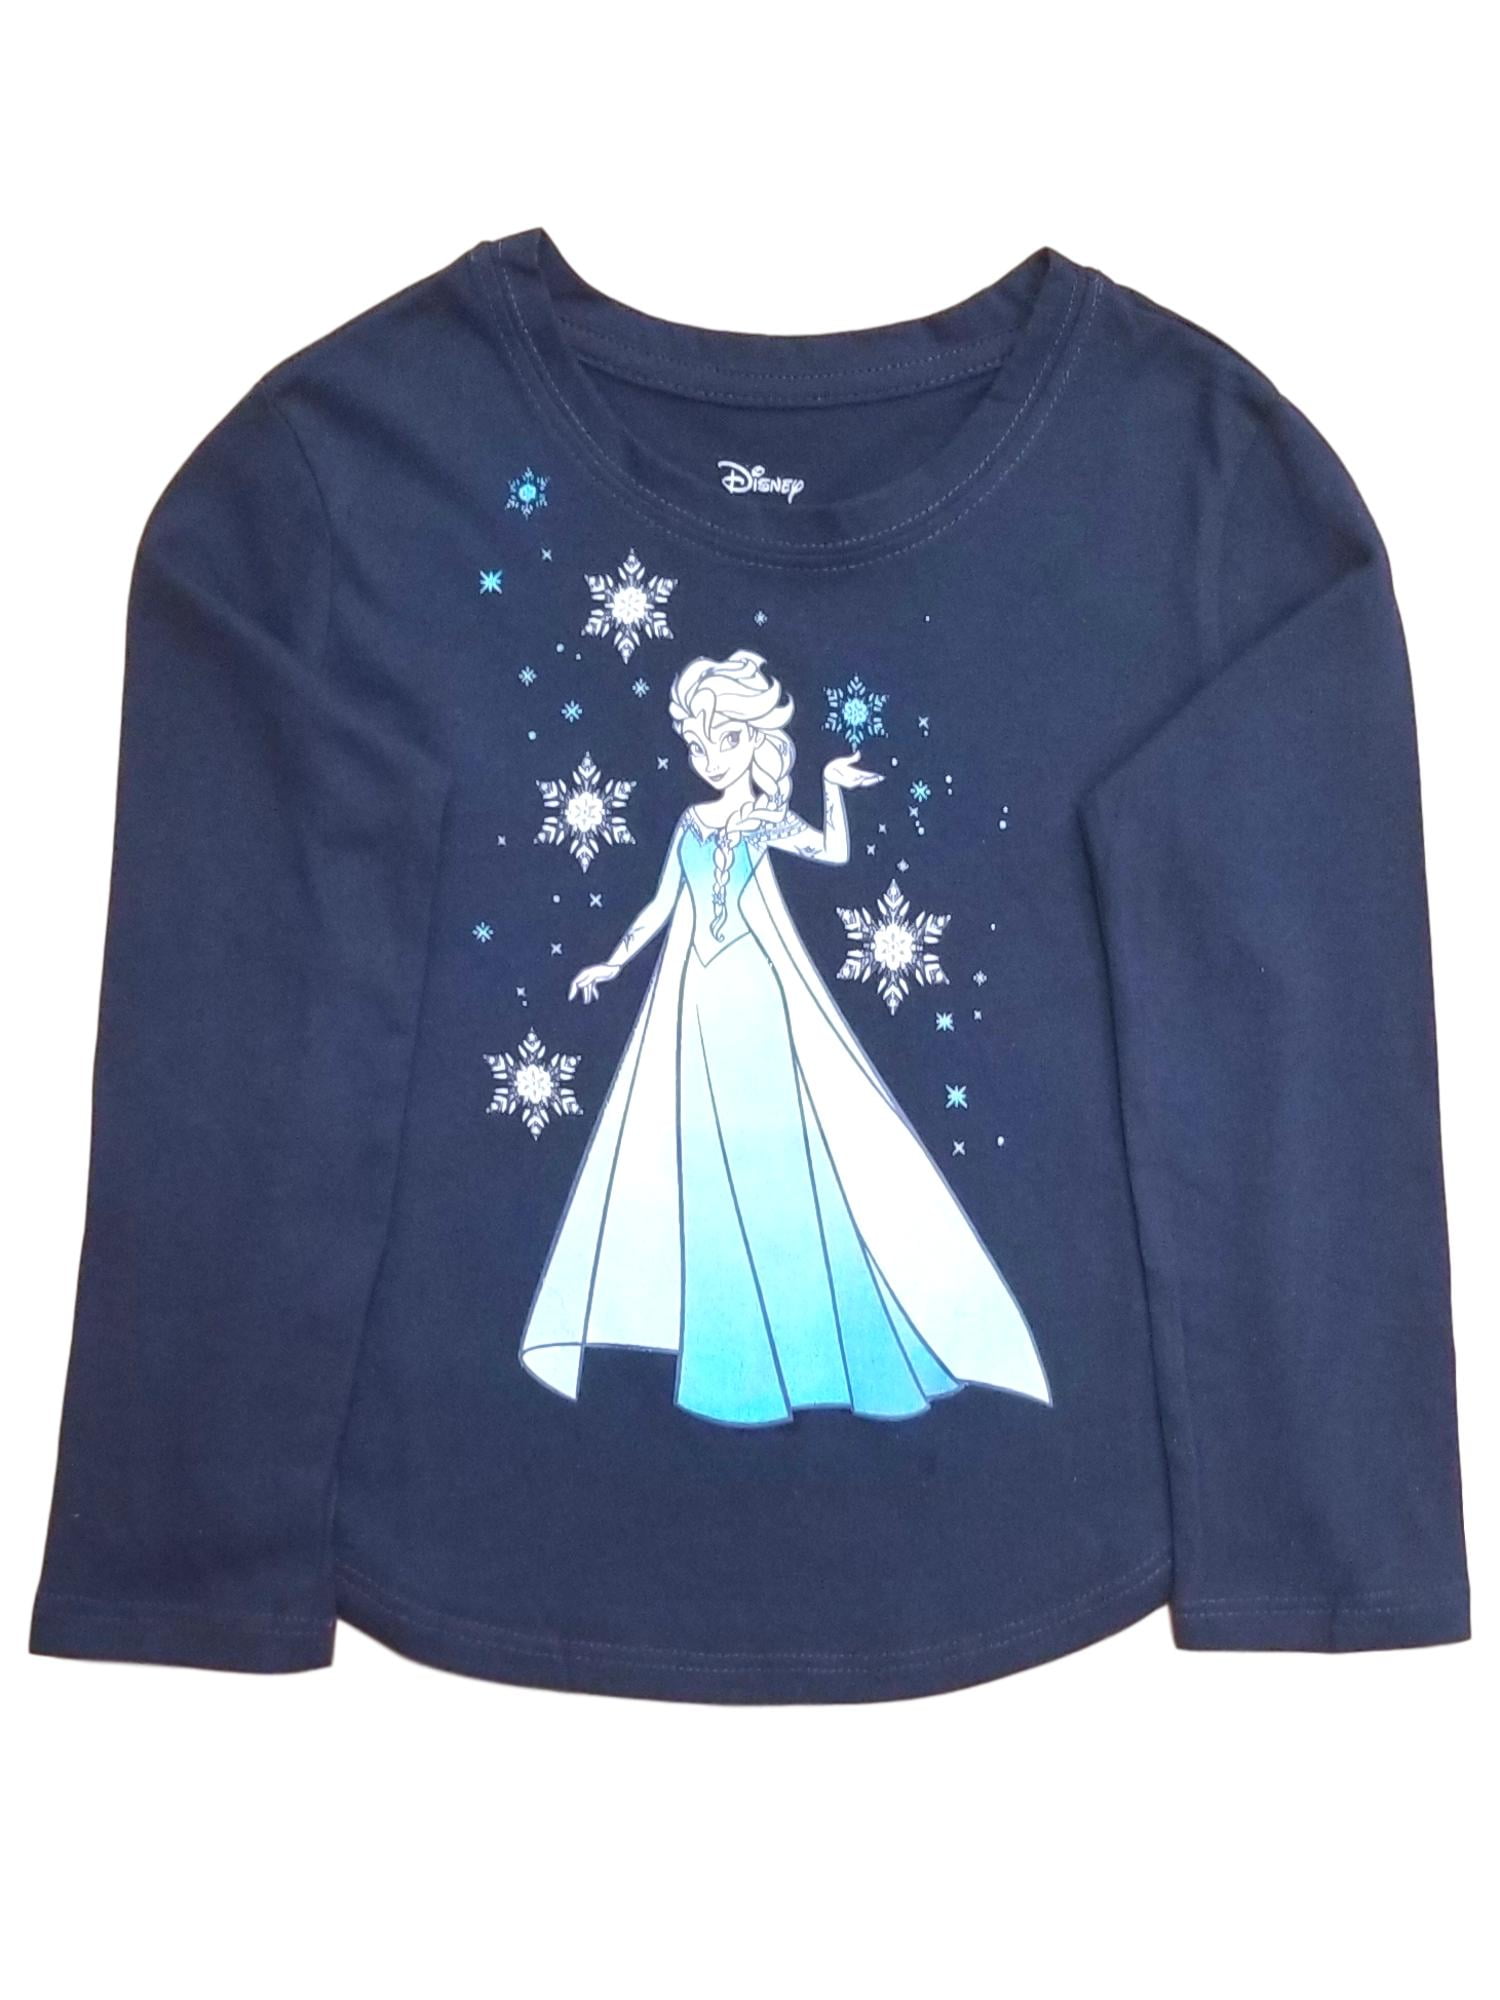 Kids Childs Girl Frozen Girls TShirt Anna Elsa Cotton 100% Long Sleeve Tee Shirt 